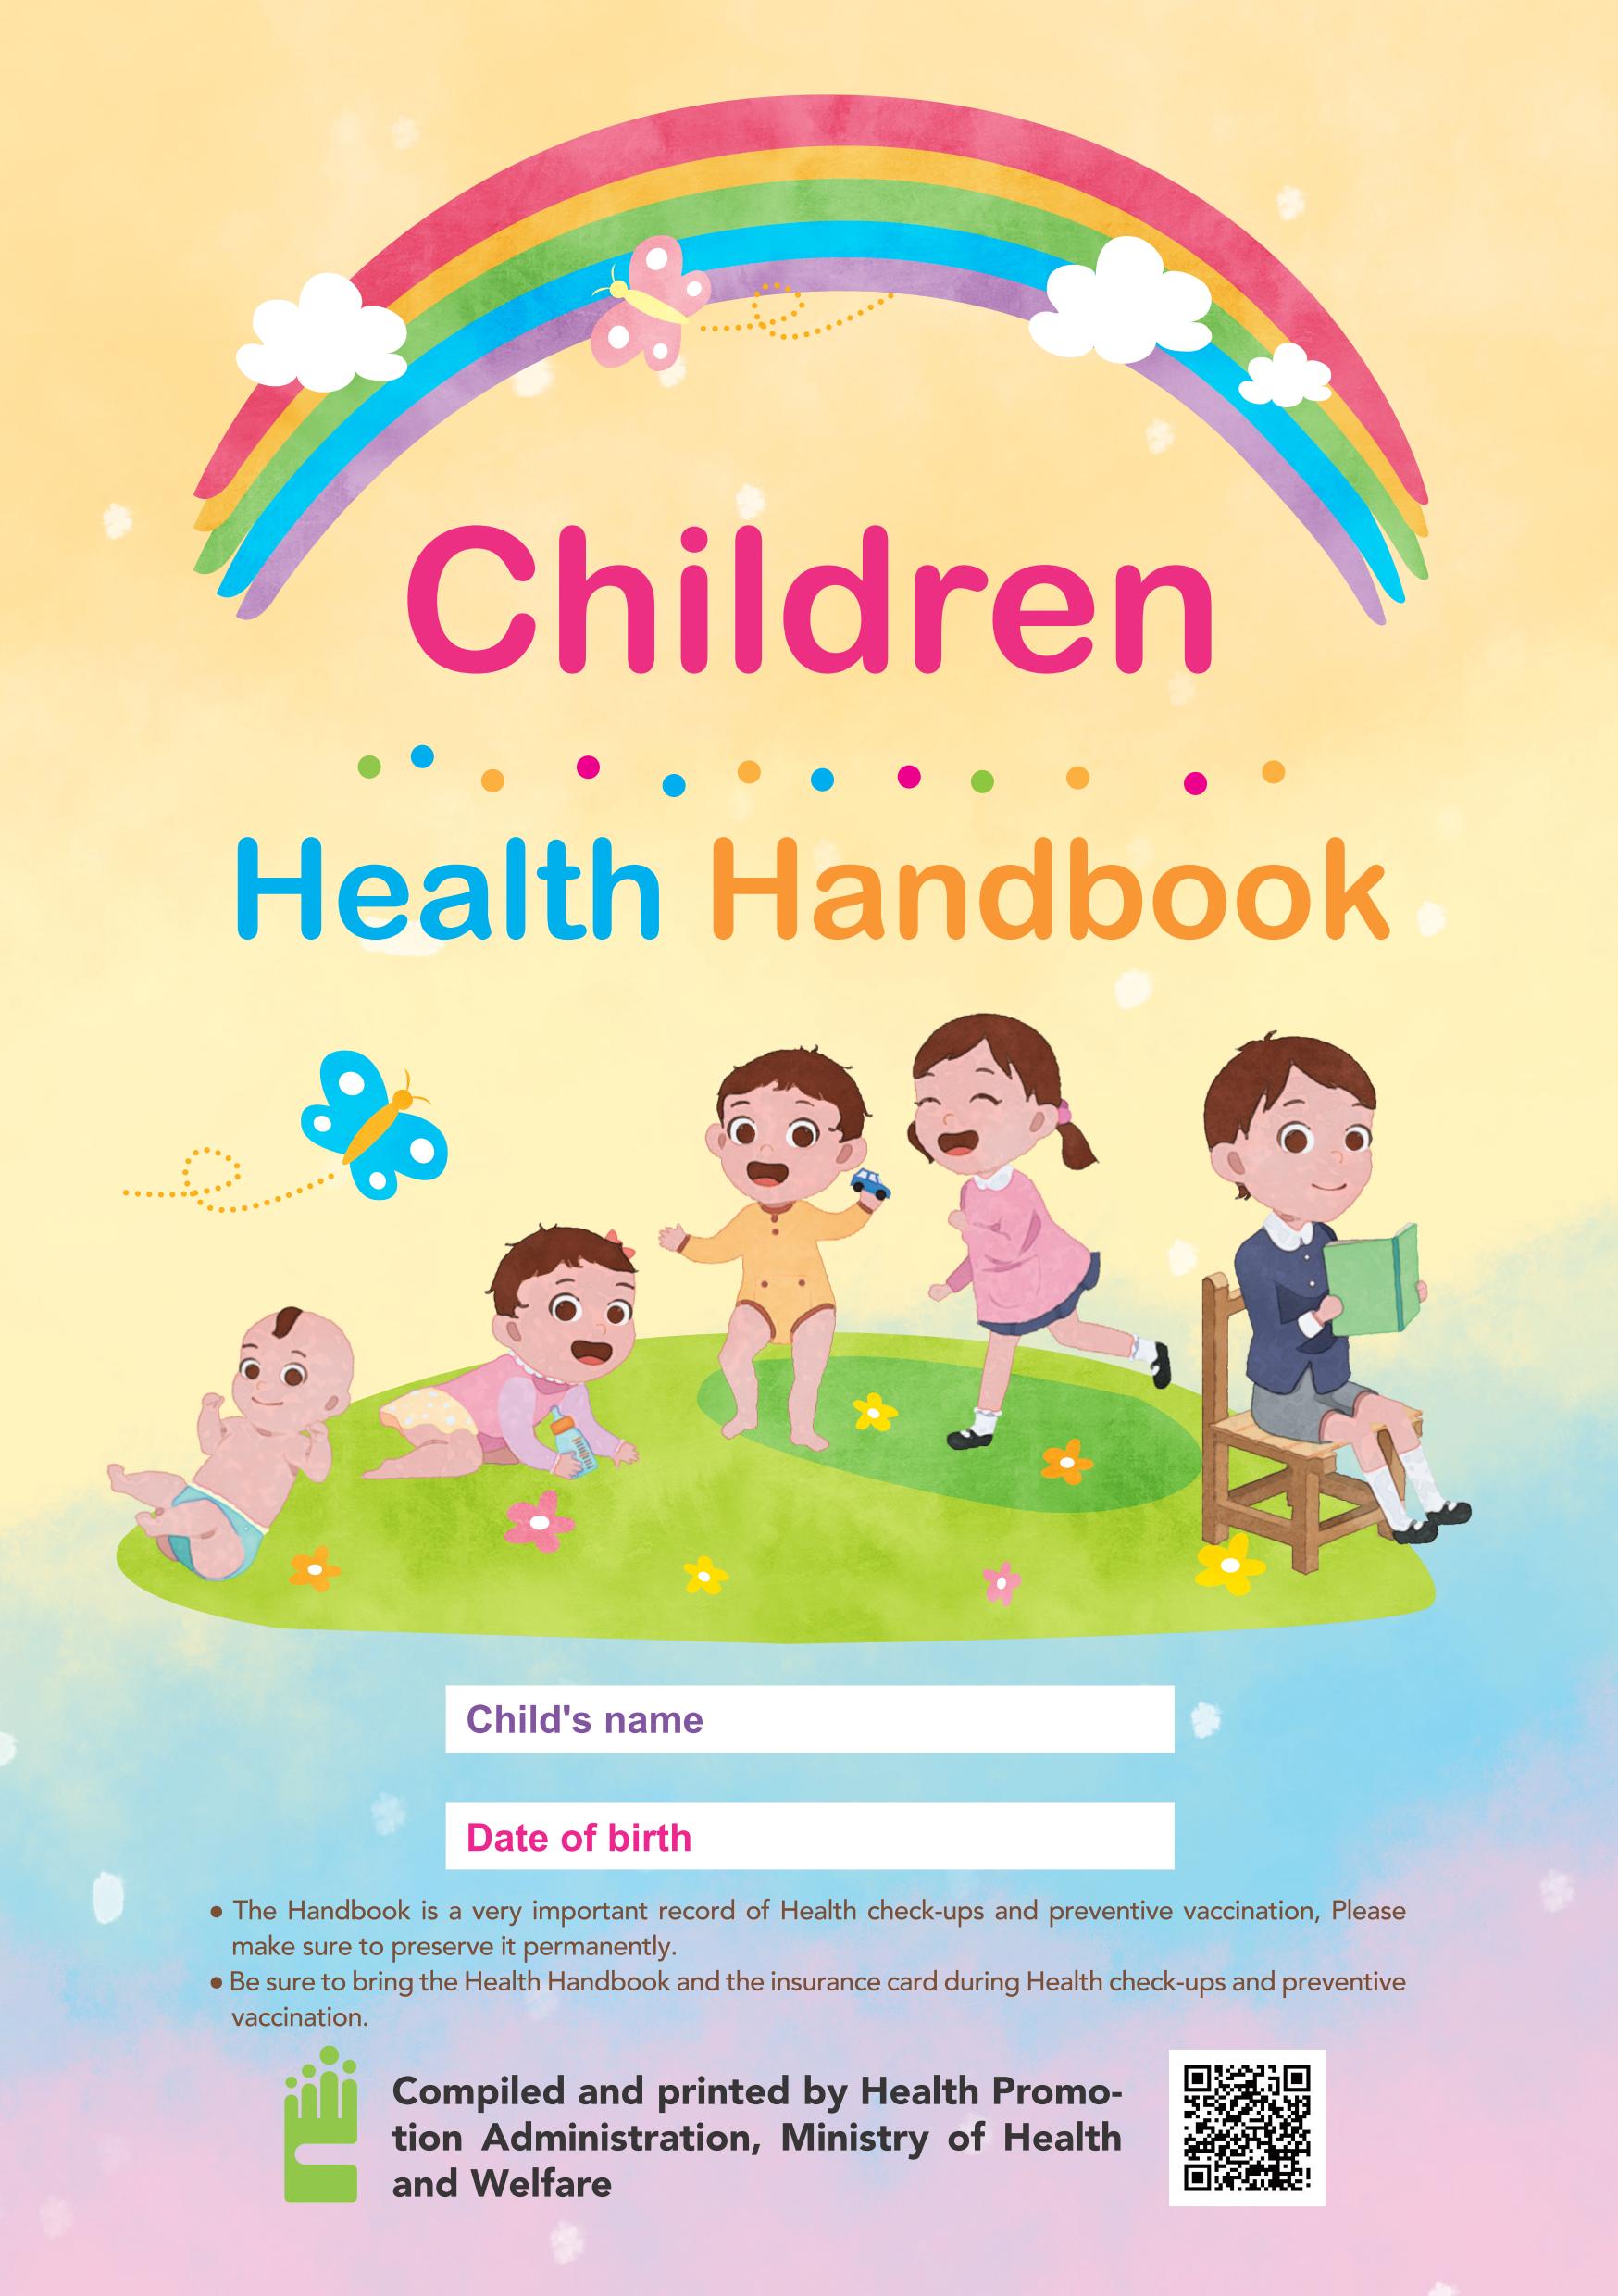 兒童健康手冊(英文版) Children Health Handbook